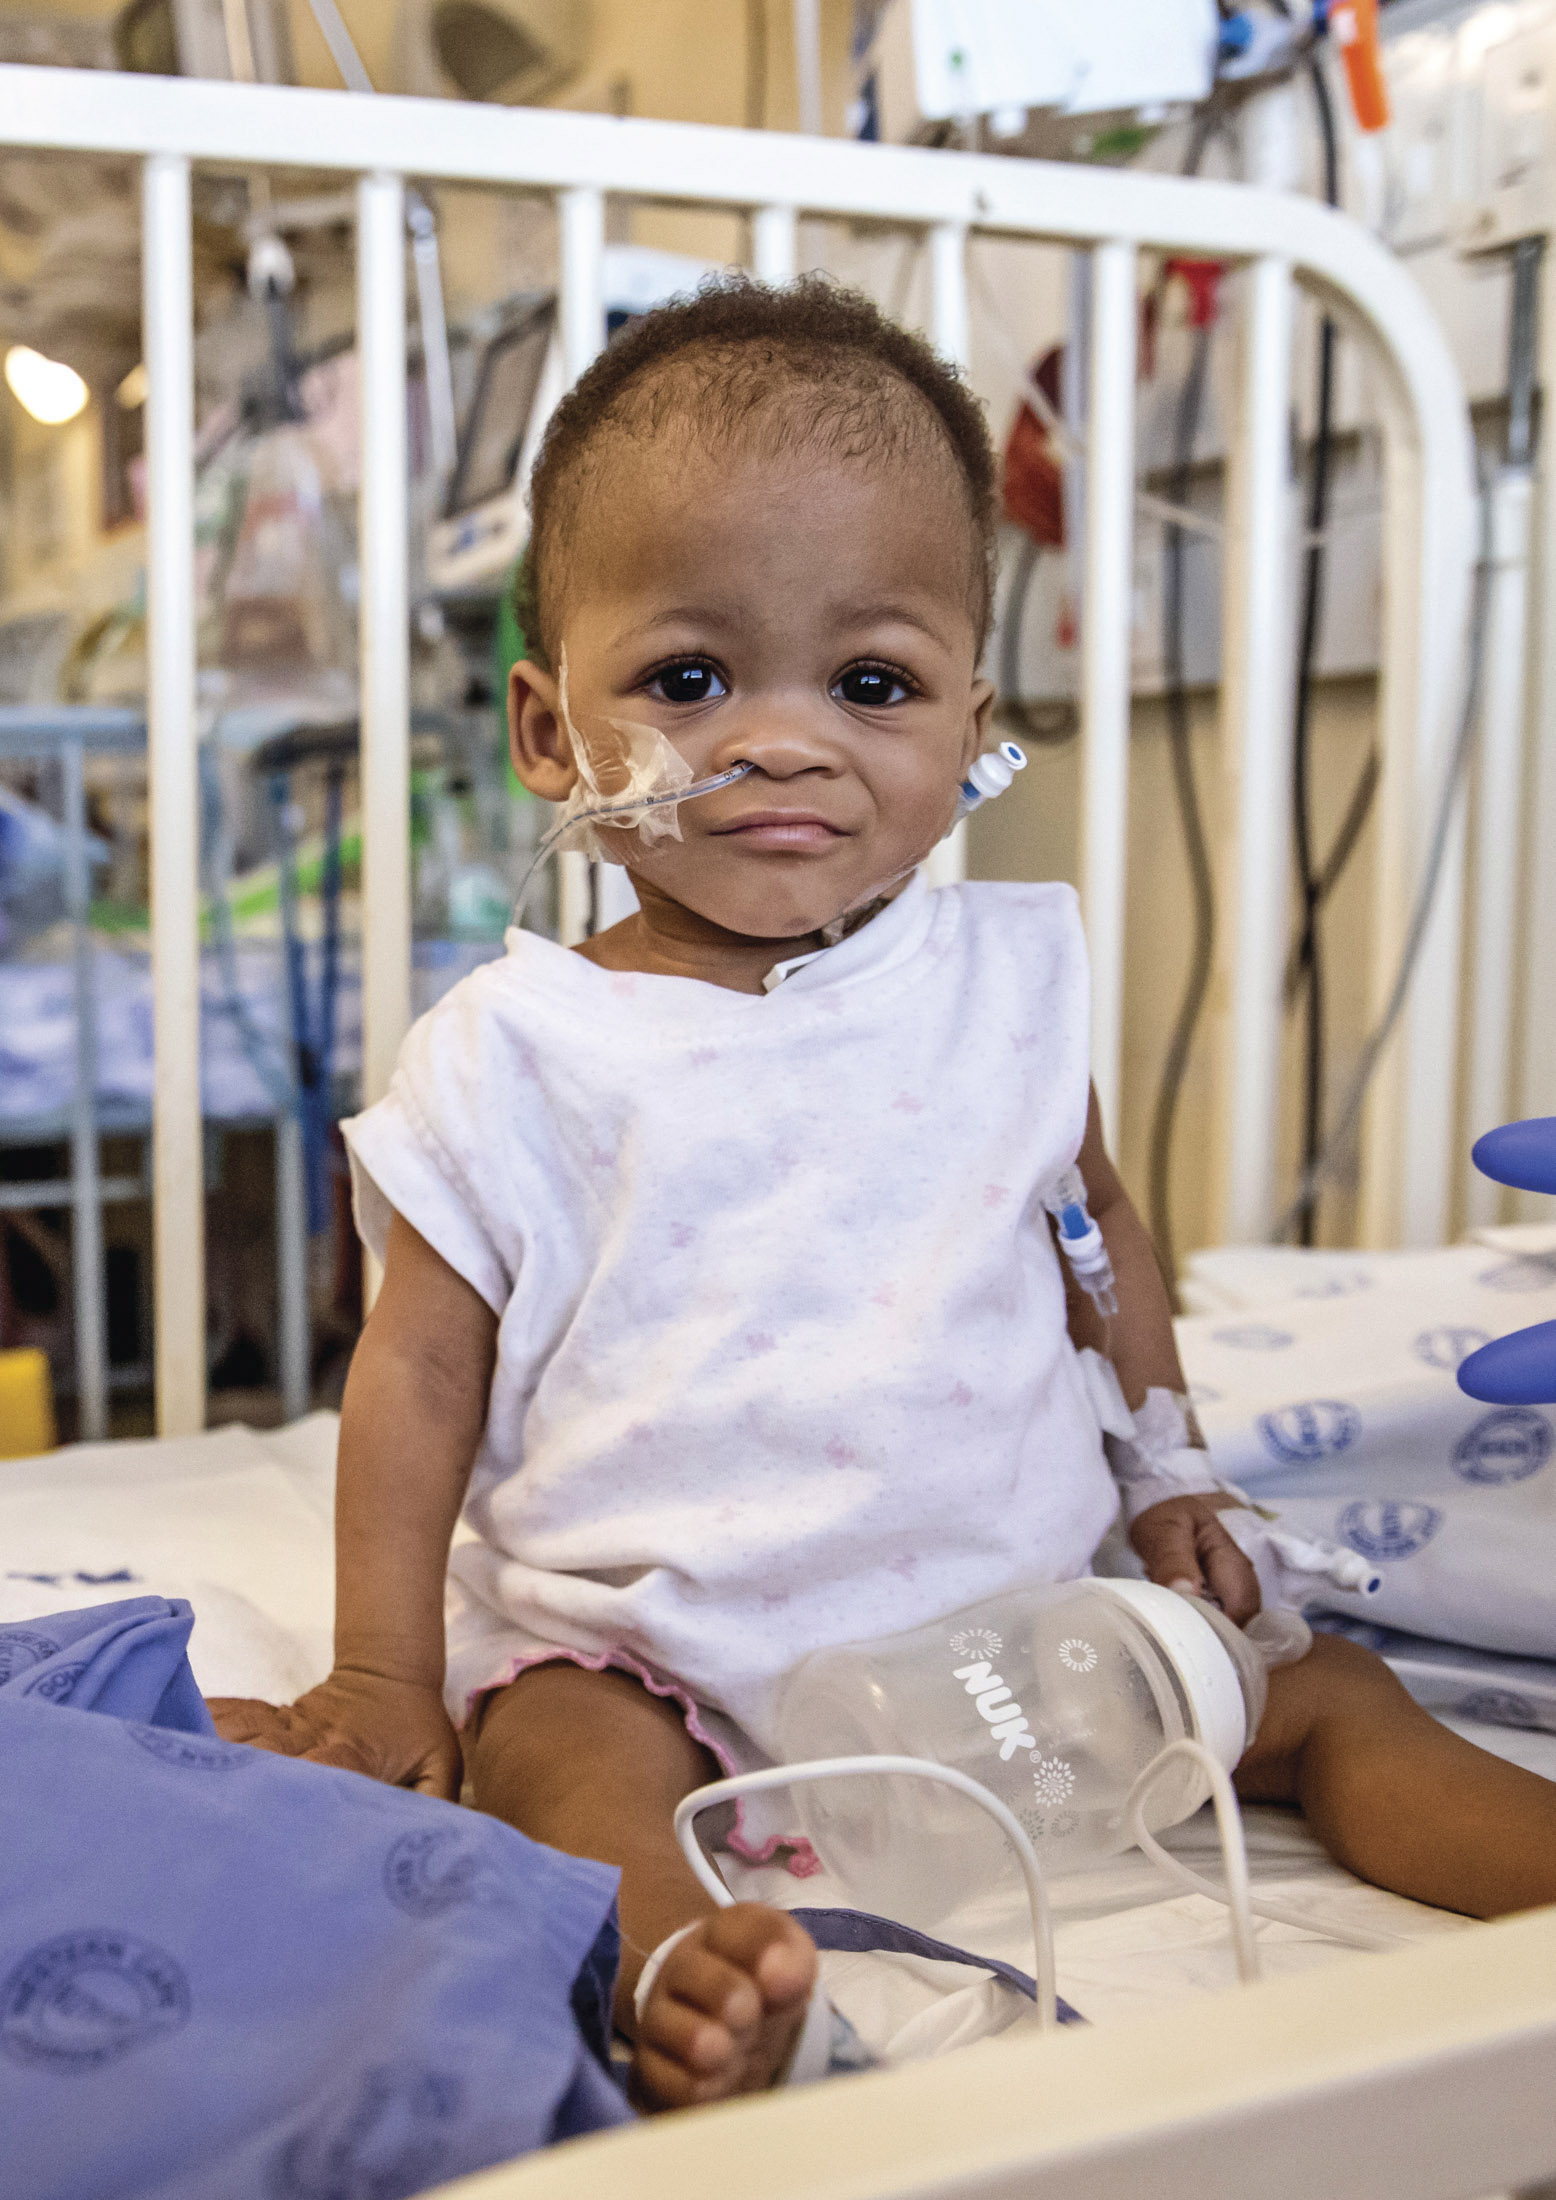 Ein Kleinkind mit Nasensonden sitzt auf einem Krankenhausbett, trägt ein weißes Hemd und blickt mit einem leichten Lächeln in die Kamera. In der Umgebung sind medizinische Geräte und Bettzeug zu sehen. © Fotografie Tomas Rodriguez